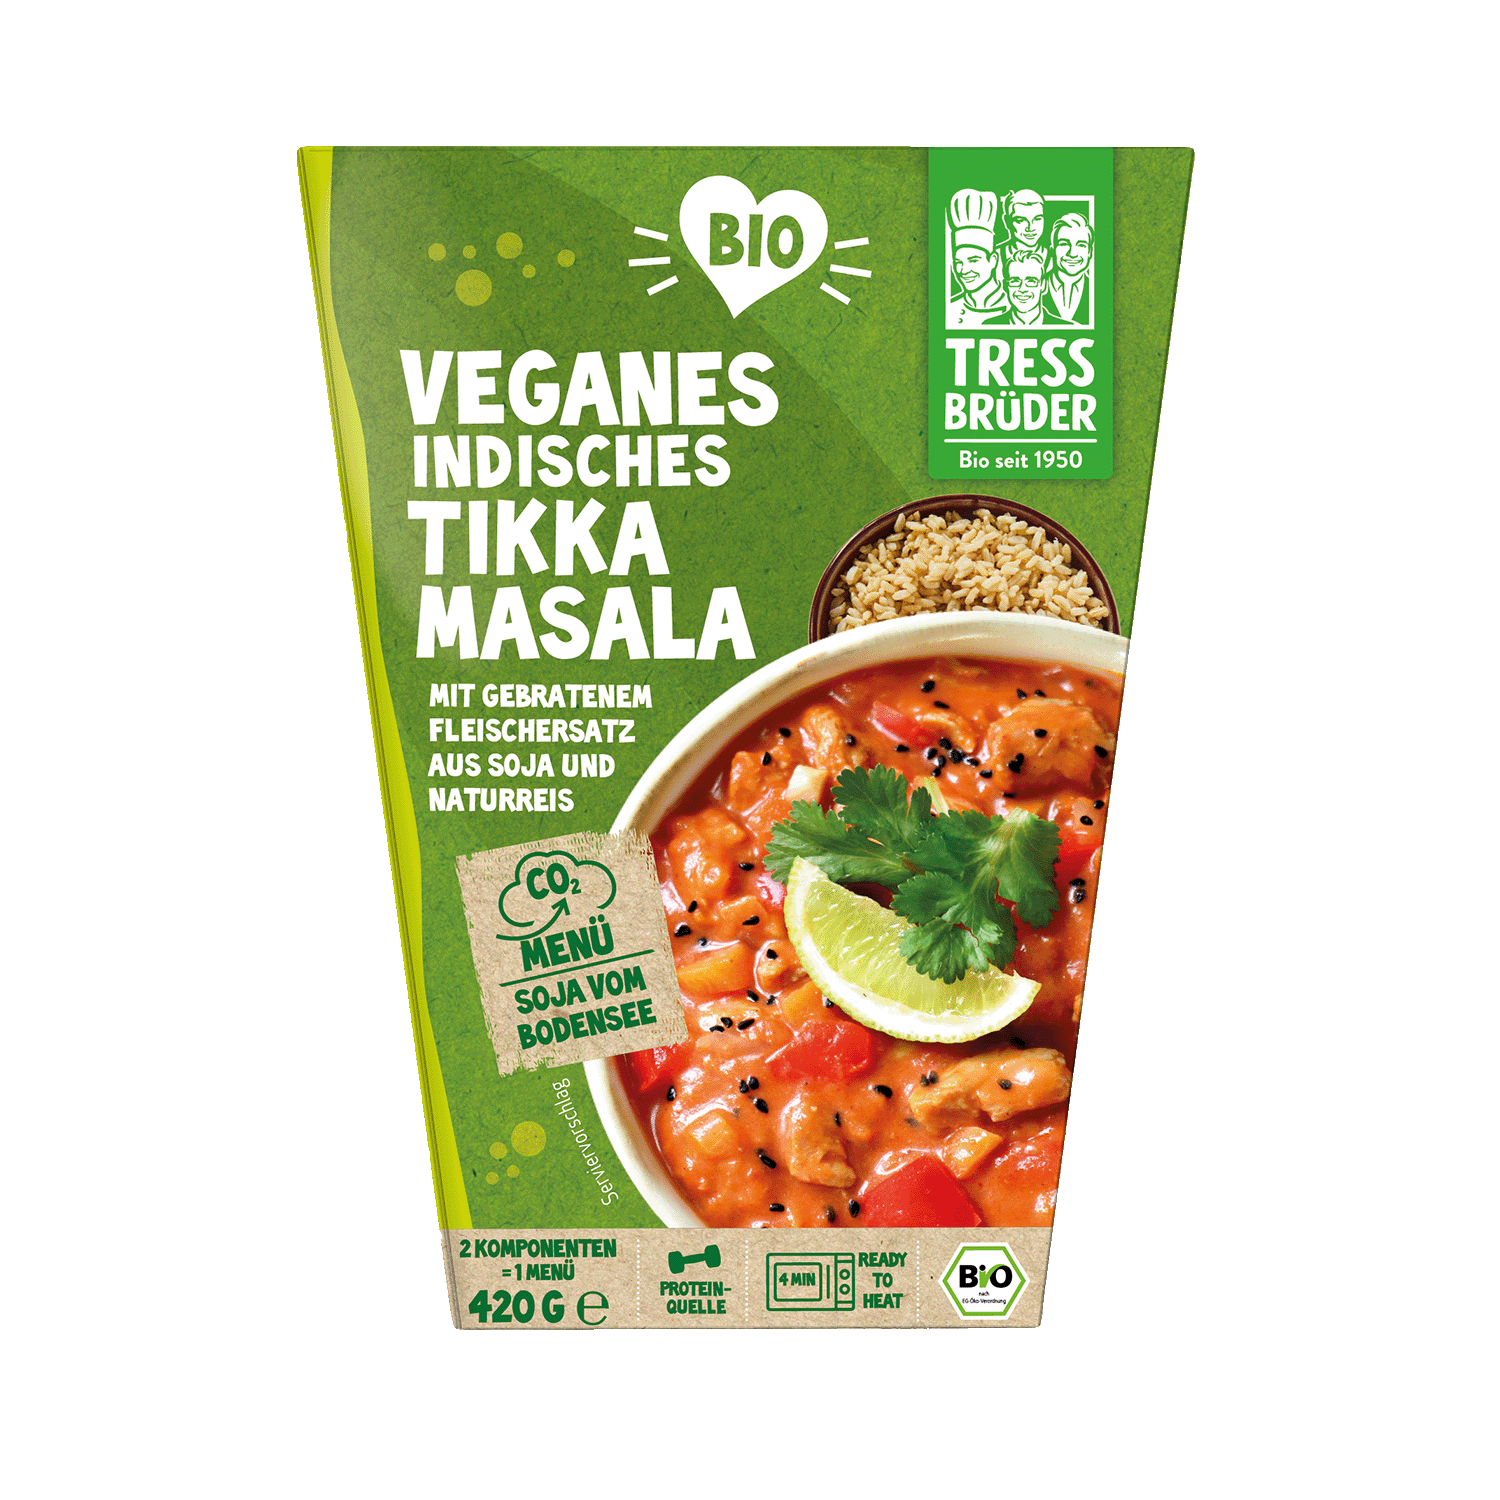 Veganes indisches Tikka Masala mit Fleischersatz aus Soja mit Naturreis, BIO, 420g